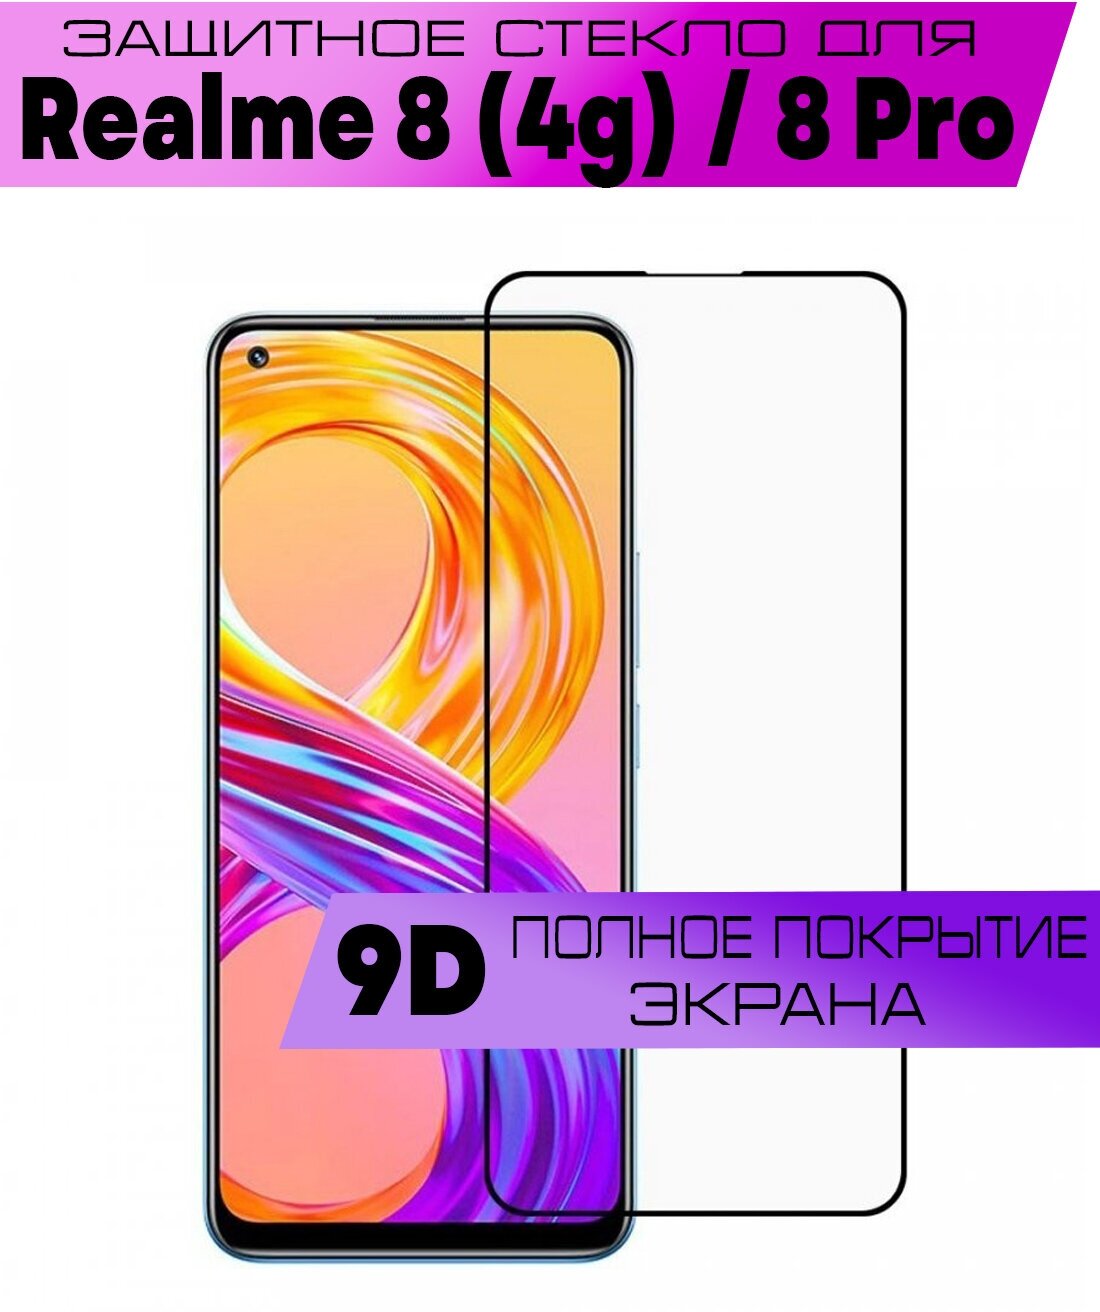 Защитное стекло BUYOO 9D для Realme 8 (4g) 8 Pro Реалми 8 8 Про (на весь экран черная рамка)